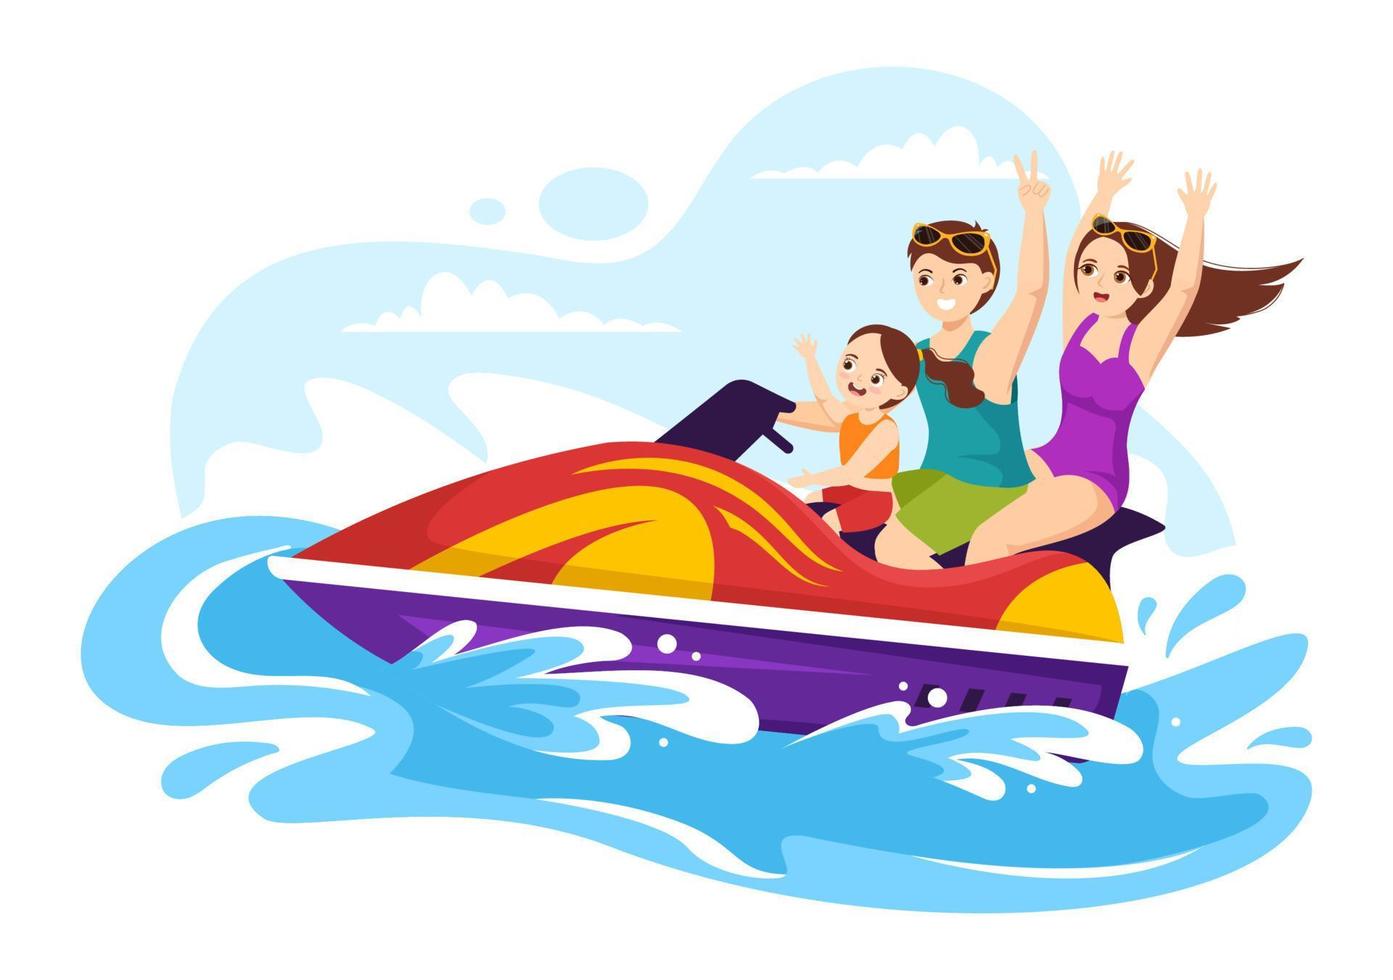 les enfants font du jet ski illustration loisirs de vacances d'été, sports nautiques extrêmes et activité de plage de villégiature dans le modèle de dessin animé plat dessiné à la main vecteur